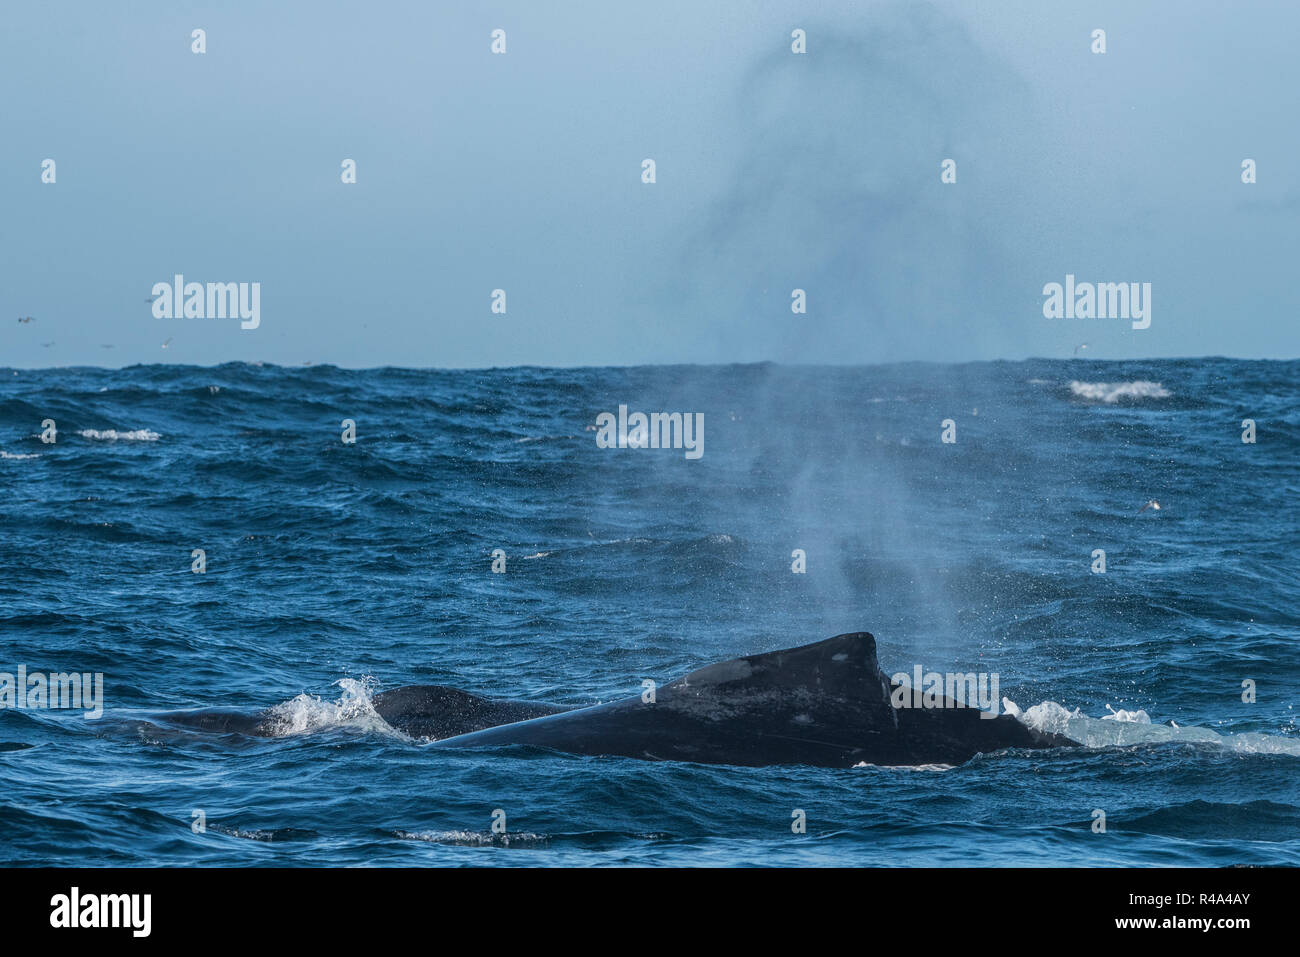 Una ballena jorobada superficies brevemente y envía un penacho de spray en el santuario marino nacional de las Islas Farallón frente a la costa de San Francisco. Foto de stock